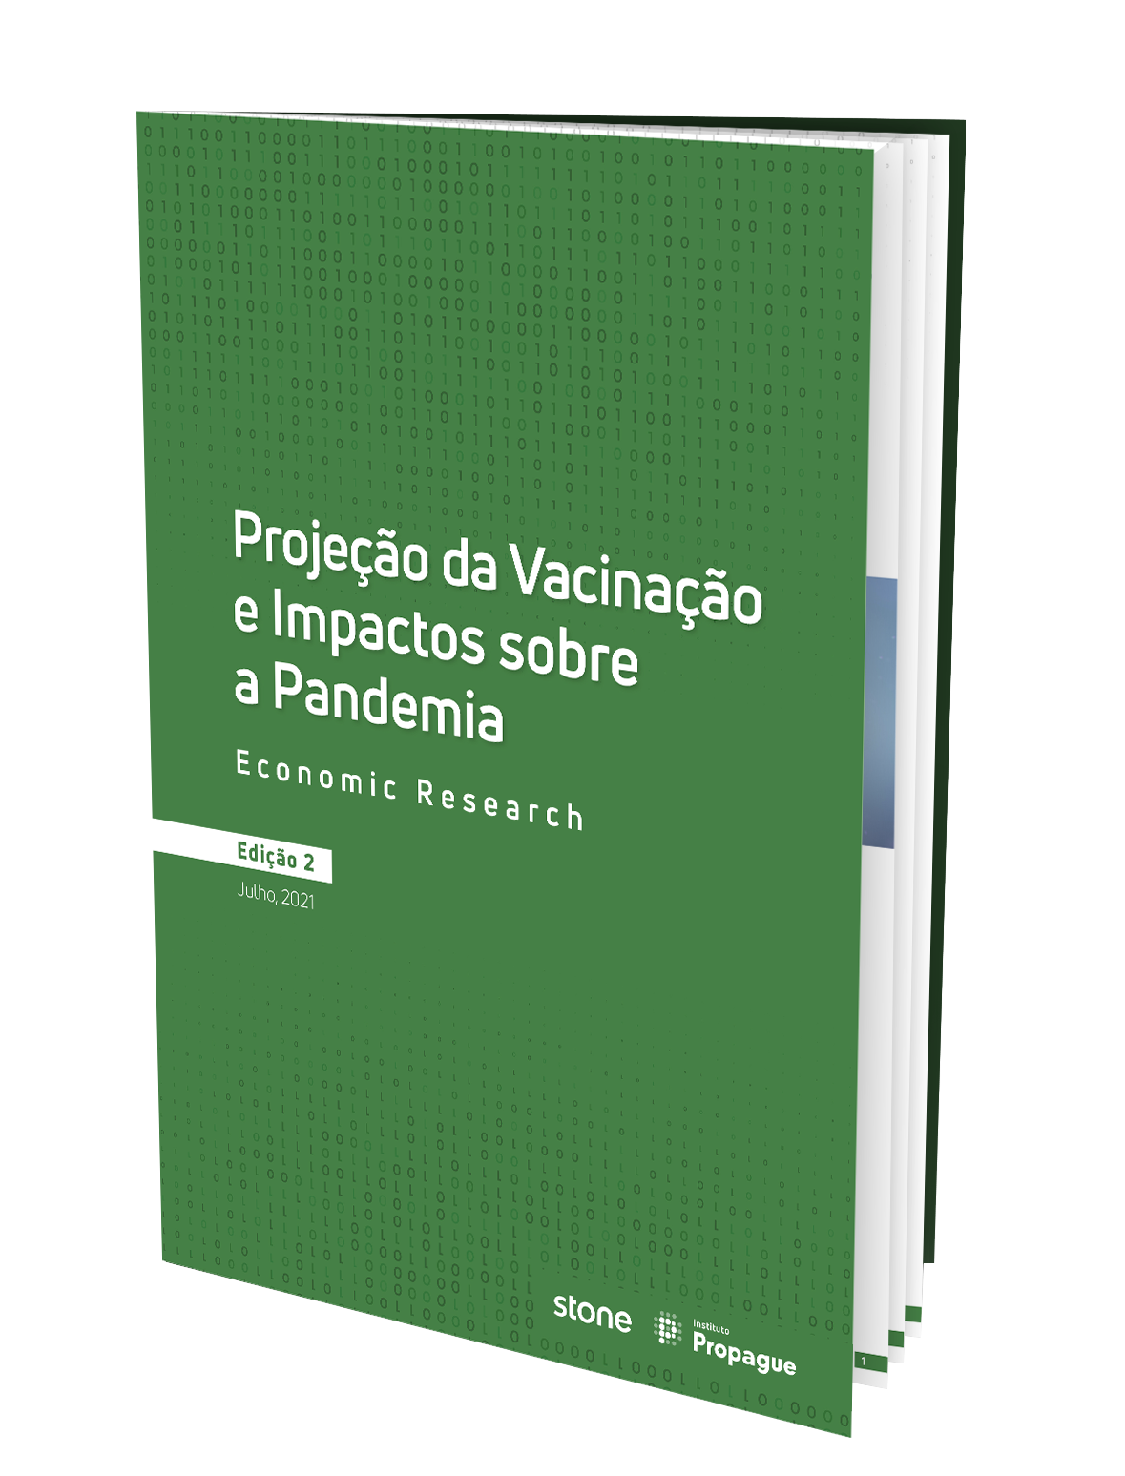 Projeção da Vacinação no Brasil e Impactos sobre a Pandemia - 2ª edição (Economic Research)